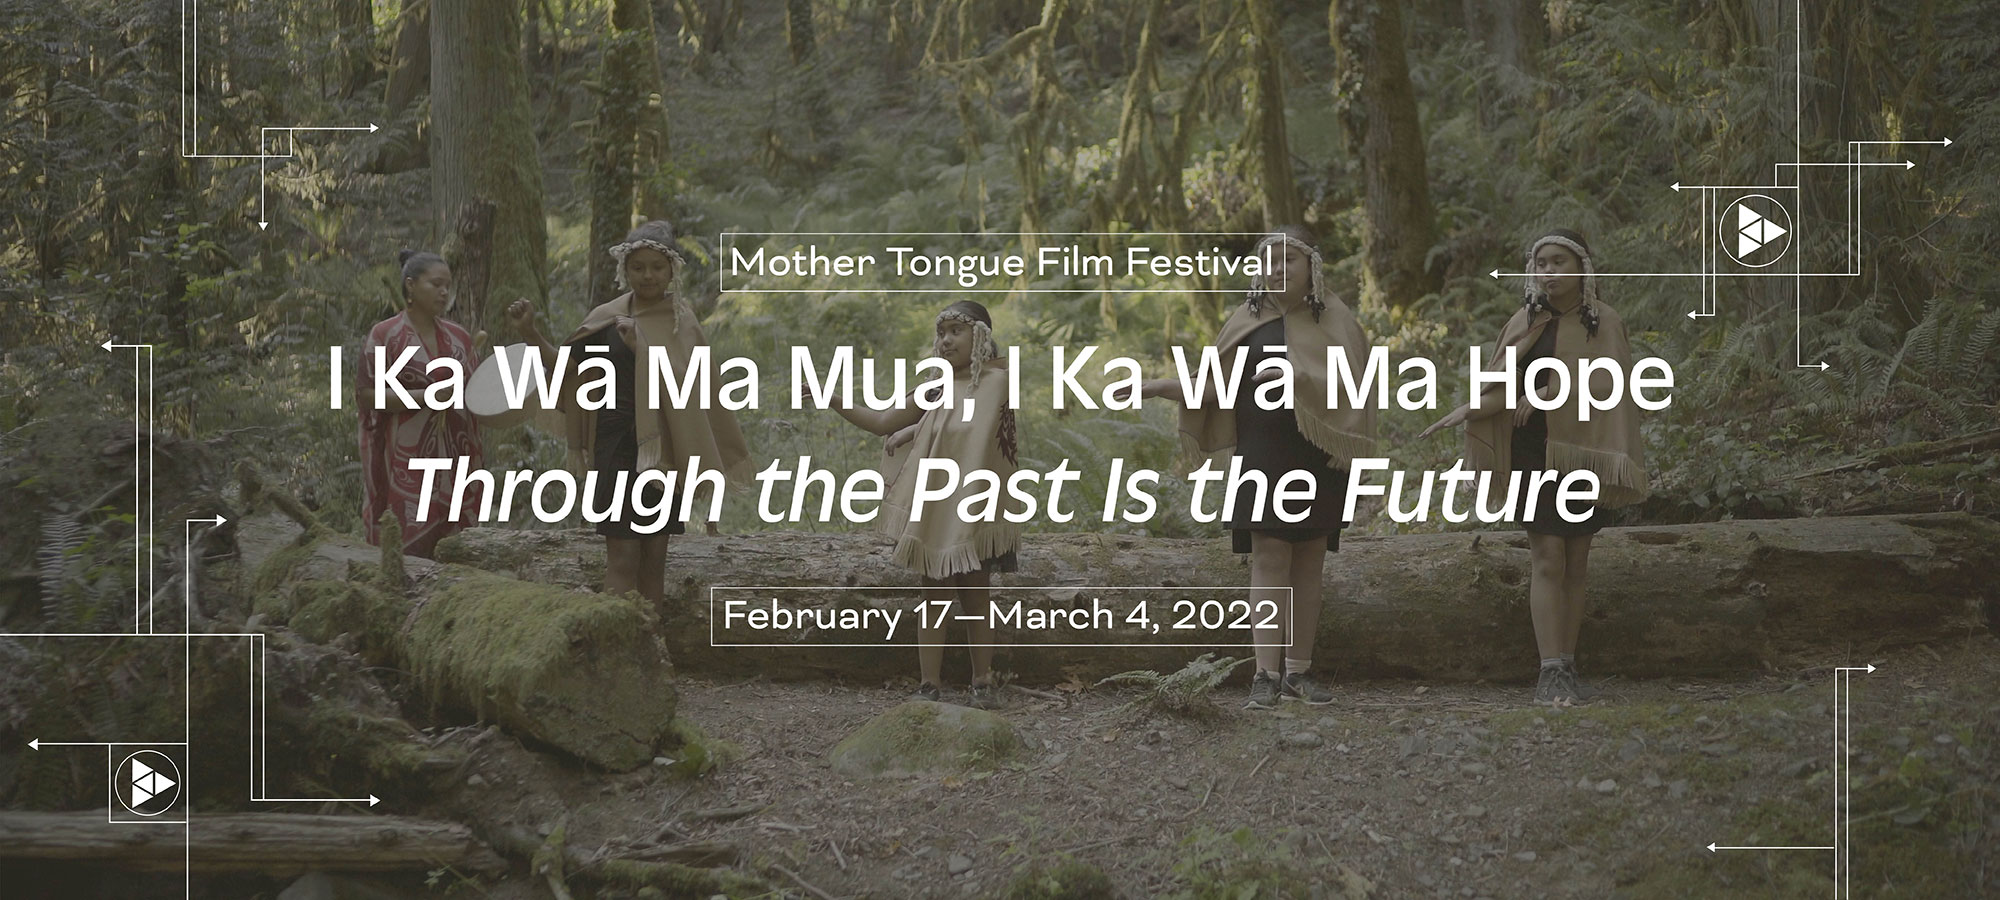 Mother Tongue Film Festival Festival. I Ka Wā Ma Mua, I Ka Wā Ma Hope. Through the Past Is the Future. February 17–March 4, 2022.